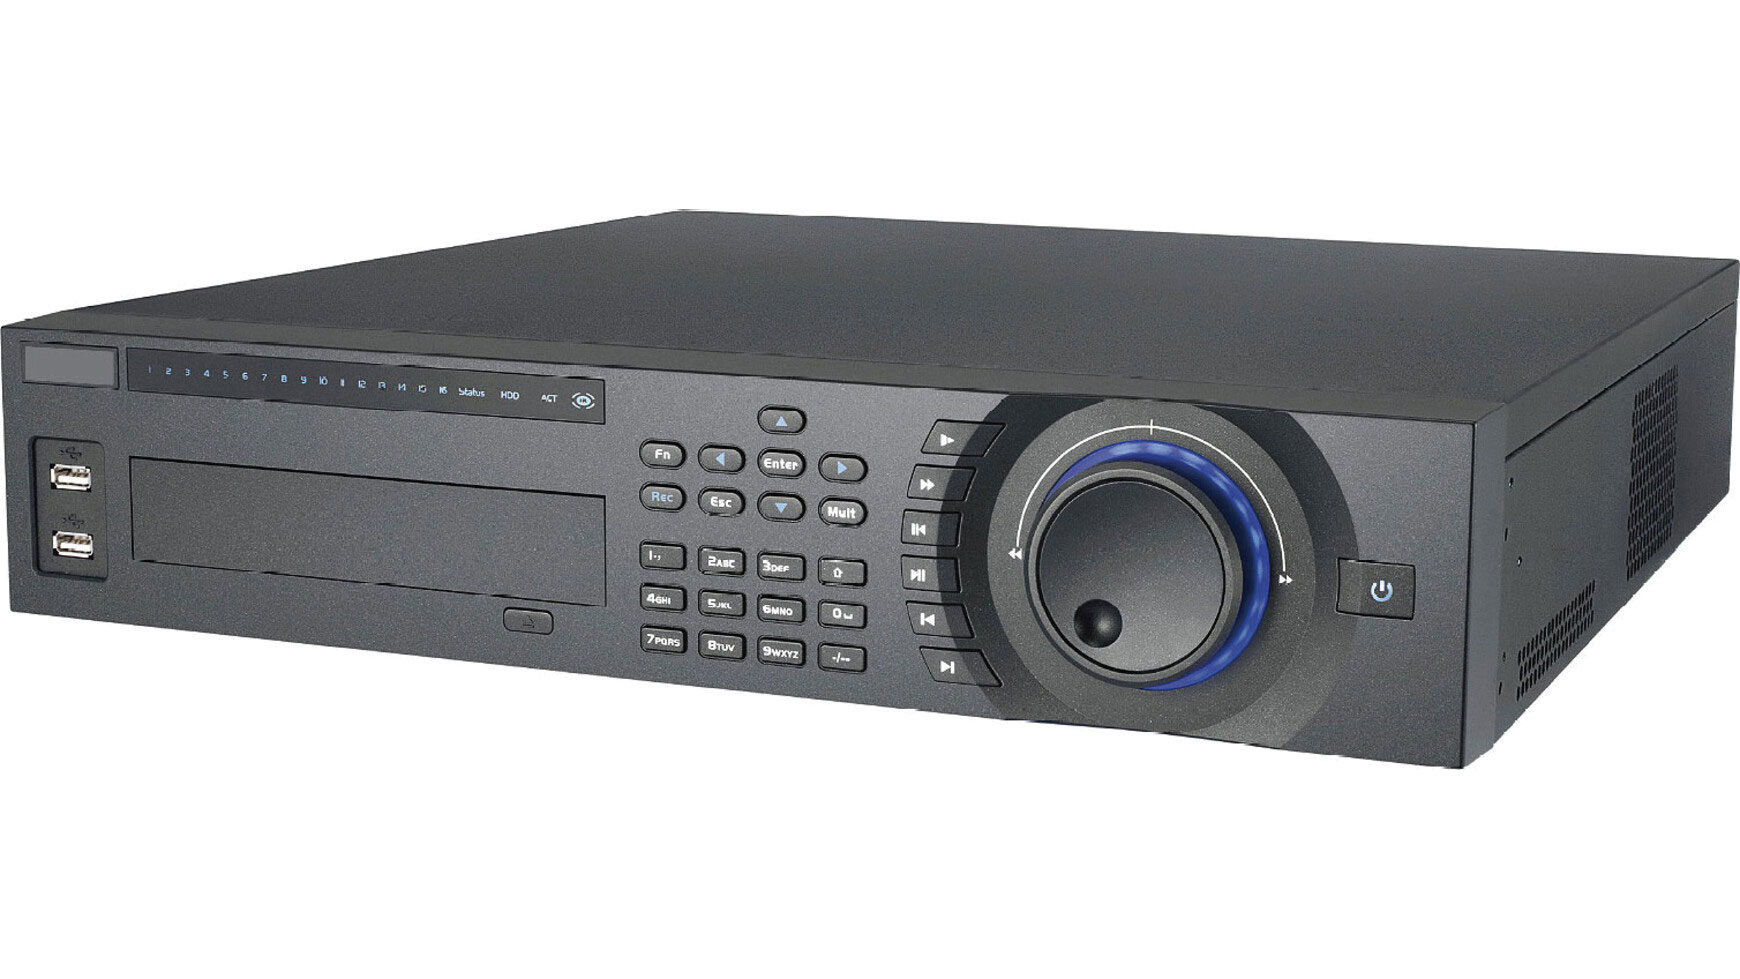 Dahua DVR-04HFU - Hibridni digitalni video snimač, 4 analogna ulaza + 4 kanala za IP kamere, H264 kompresija, web server